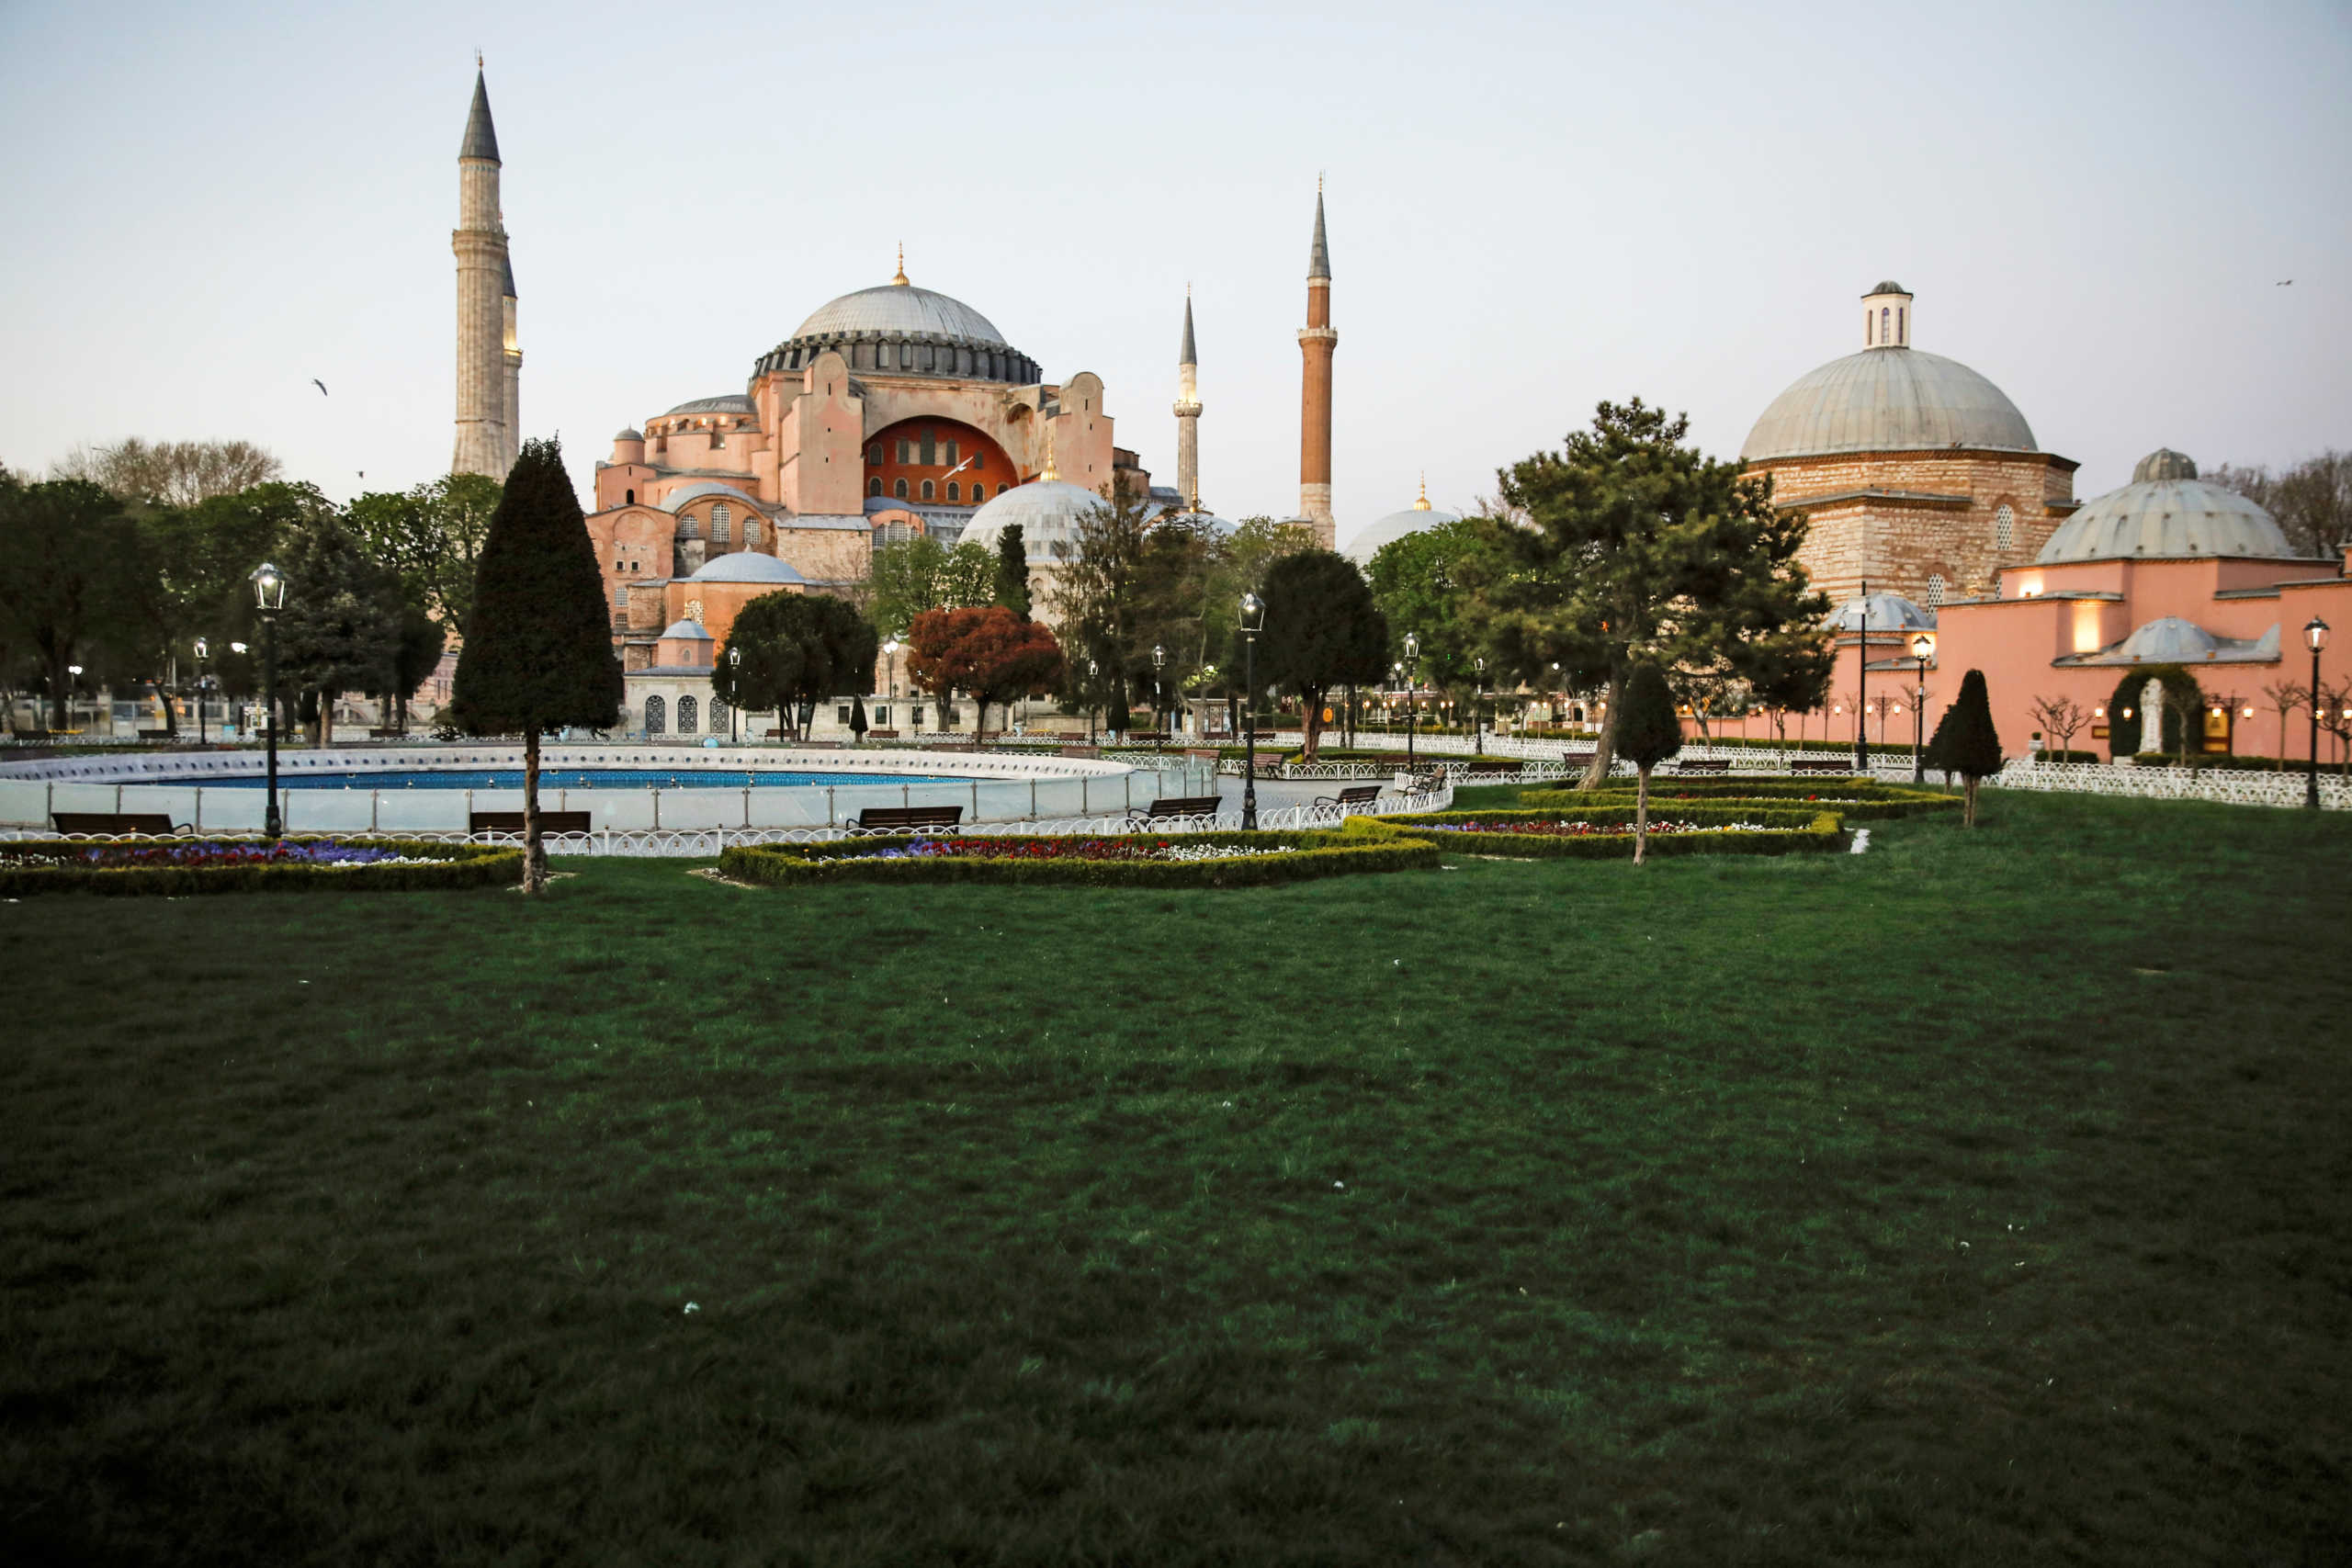 Αγιά Σοφιά: “Ο Ερντογάν μπορεί να την κάνει τζαμί με ένα απλό διάταγμα”